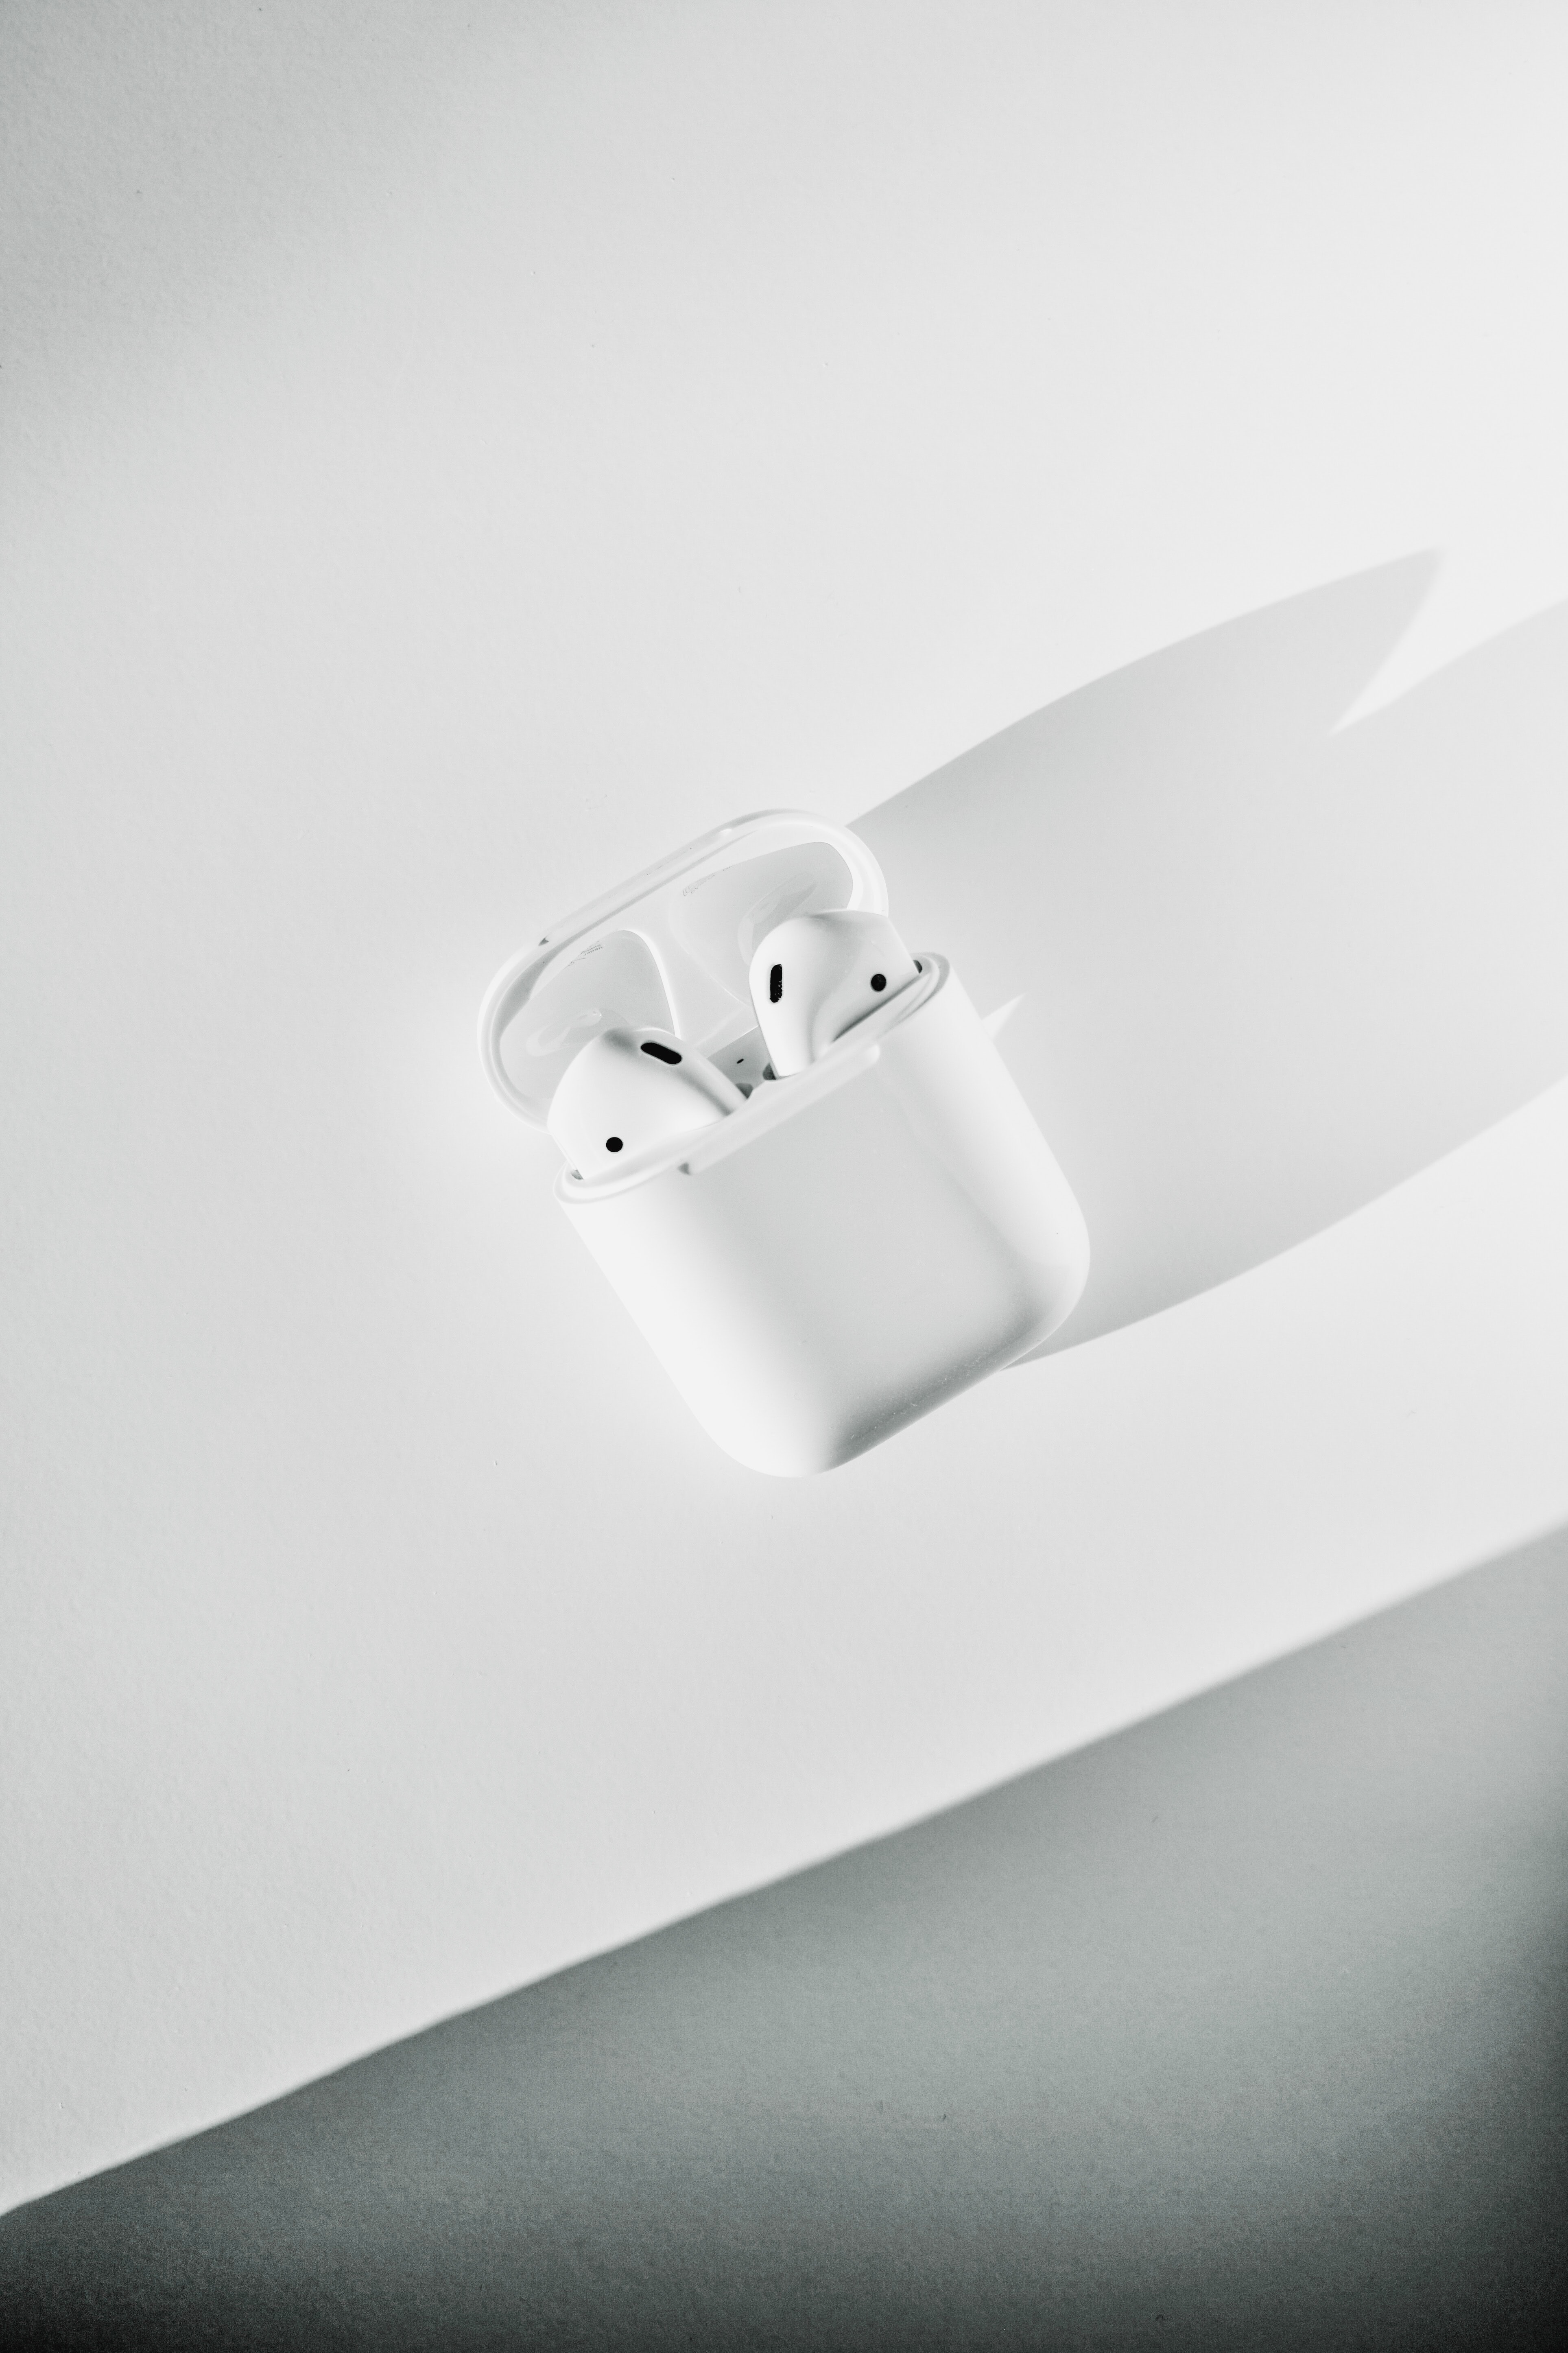 에어팟으로 음악을 듣는 방법: 에어팟으로 음악 듣기에 대한 팁과 추천 음악 앱 소개